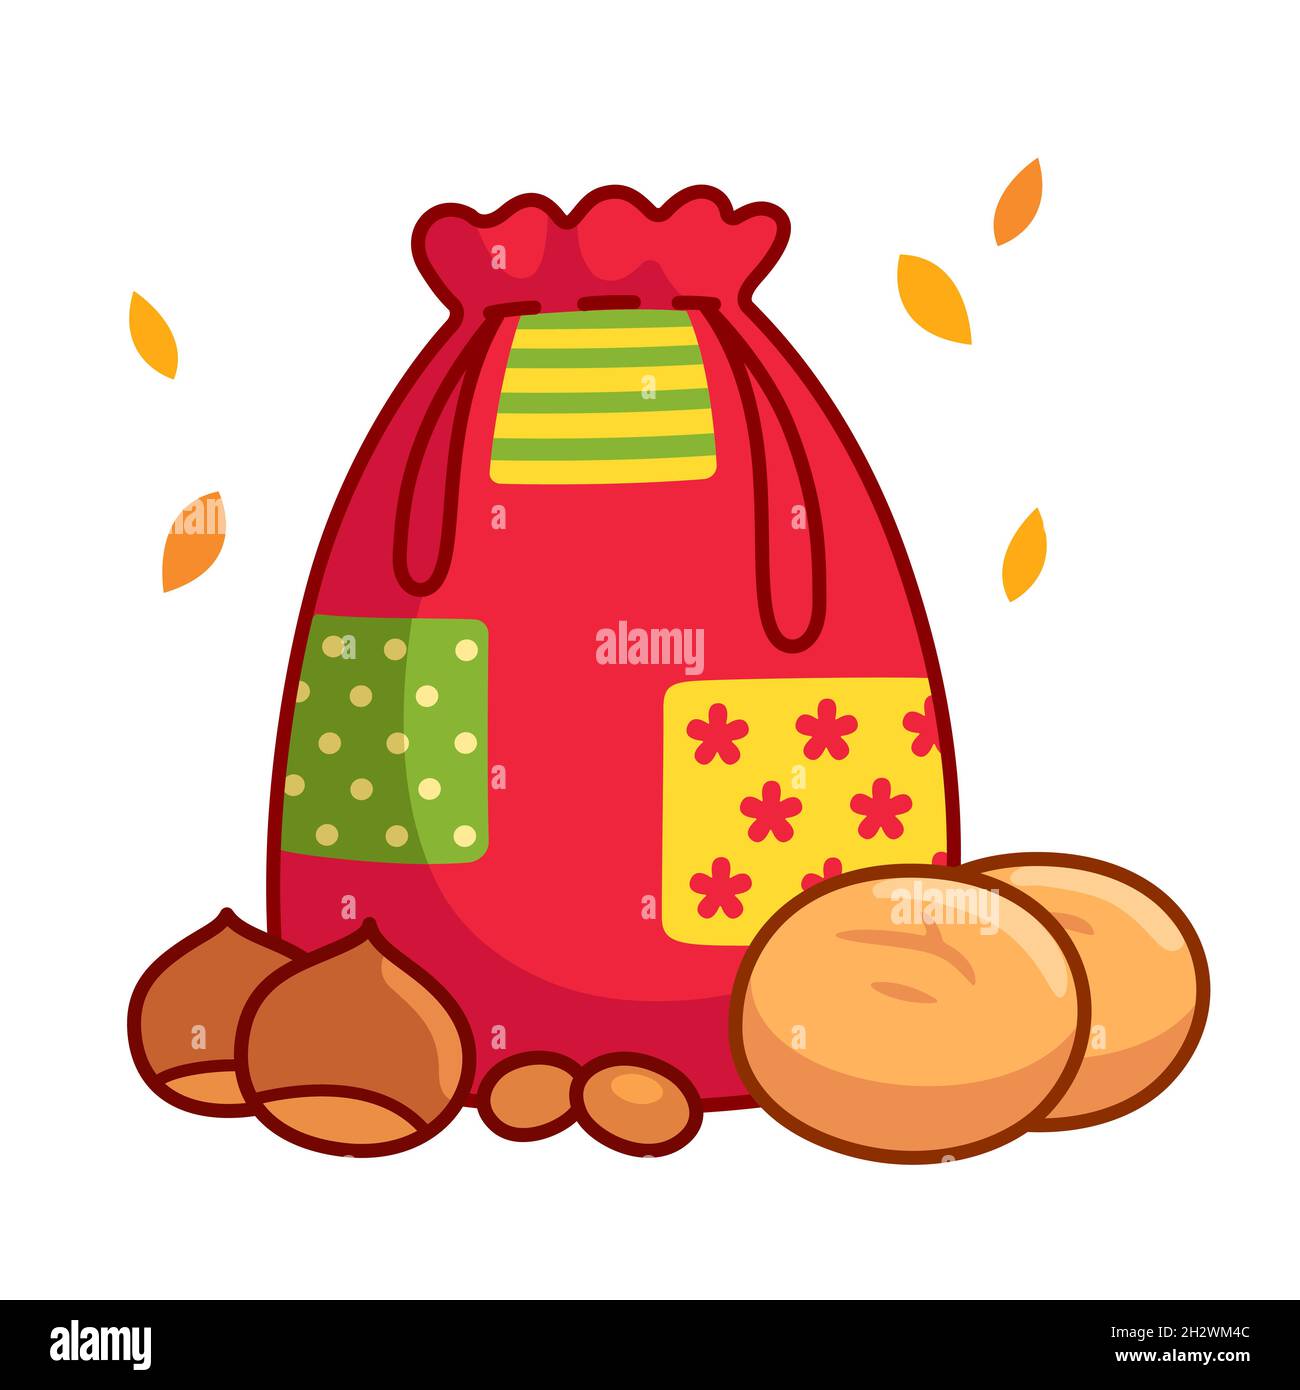 Pão por Deus (portugais pour le pain pour Dieu) la tradition de la Toussaint au Portugal.Sac en tissu avec broas (gâteaux) noix et châtaignes.Vecteur de dessin animé illus Illustration de Vecteur